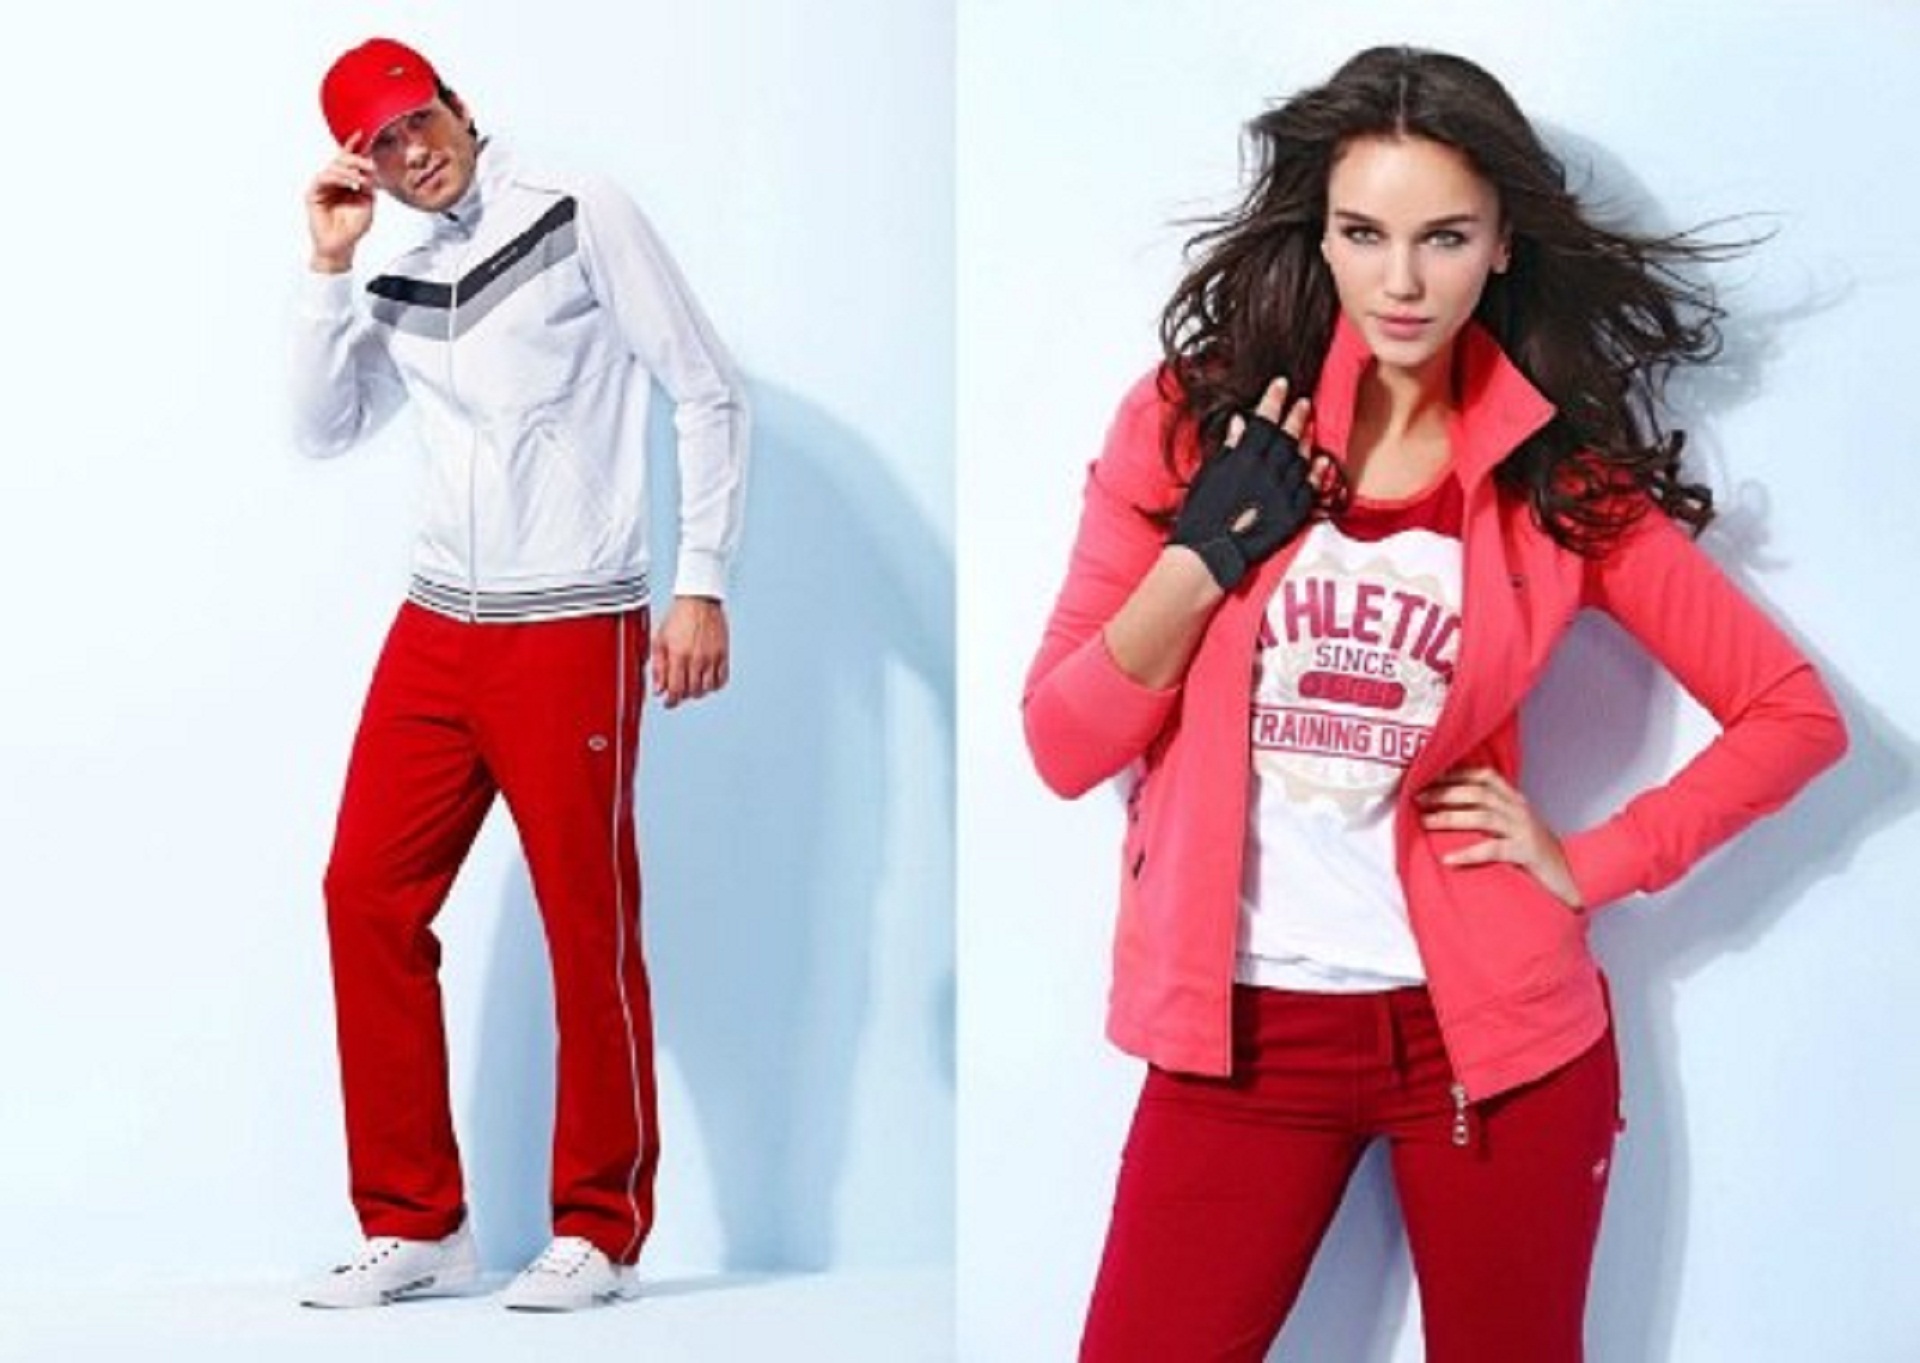 Интернет спортивной женской одежды. Спортивная одежда. Спортивный стиль одежды. Спортивные костюмы реклама. Реклама женской спортивной одежды.